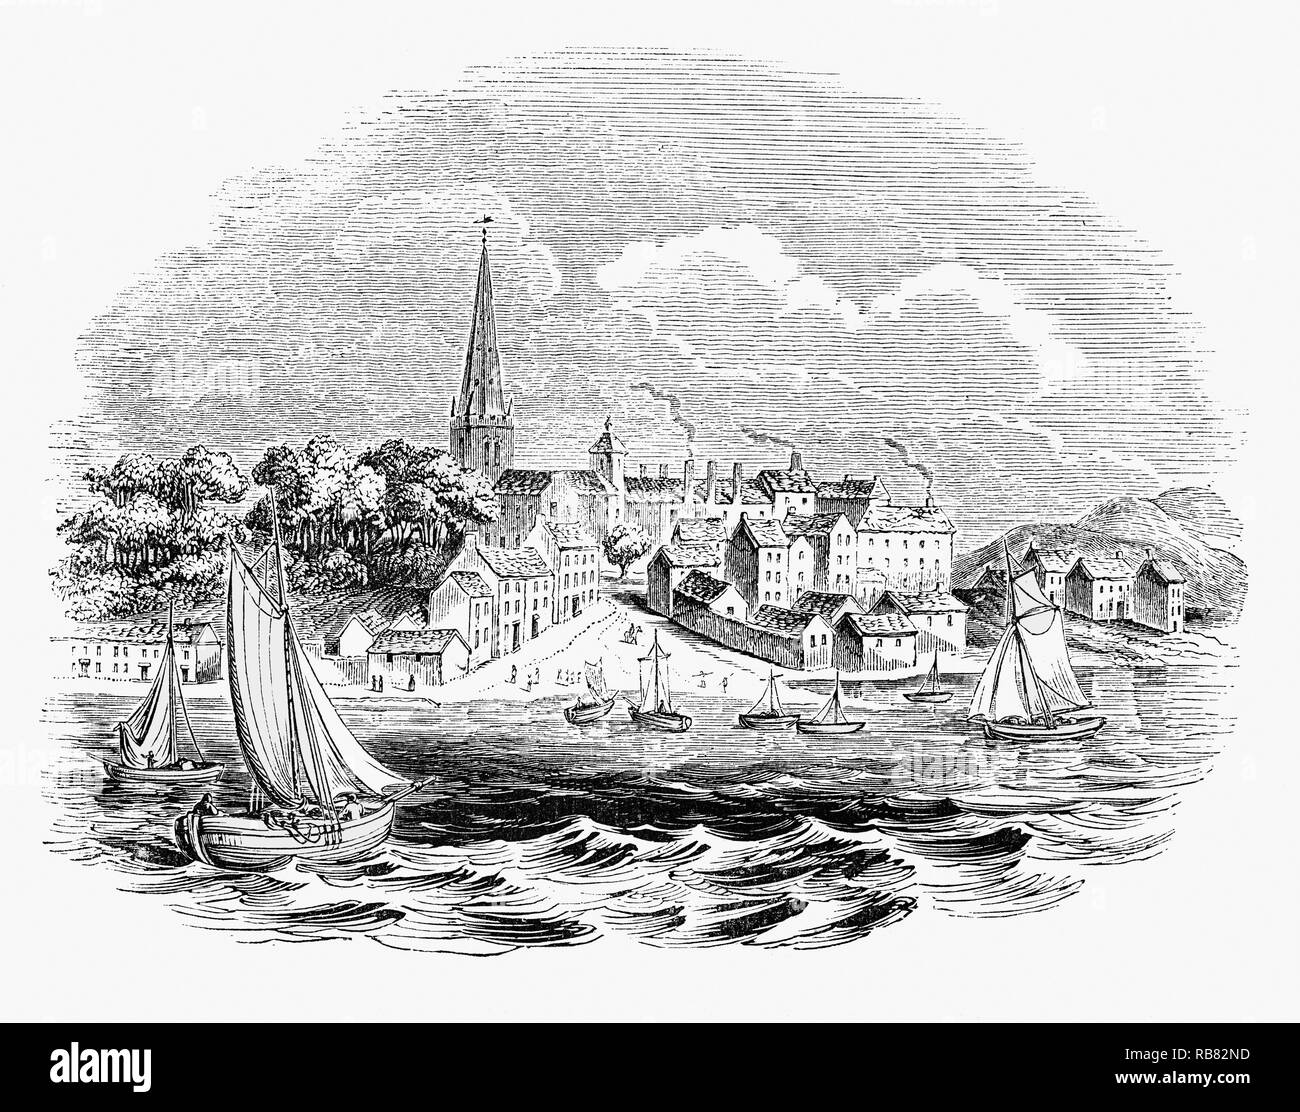 Derry, Londonderry, aka site de siège, le premier événement majeur de la guerre Williamite en Irlande. Le siège a été précédée par une première tentative contre la ville par les forces jacobites le 7 décembre 1688 qui a été déjoué quand 13 apprentis fermer les portes. La deuxième tentative a commencé quand Jacques II lui-même a comparu devant les murs, le 18 avril 1689 et a duré 105 jours jusqu'au 1er août. Il a pris fin après les navires portant dispositions perce à la ville. Le siège est commémoré chaque année par la communauté protestante. Banque D'Images